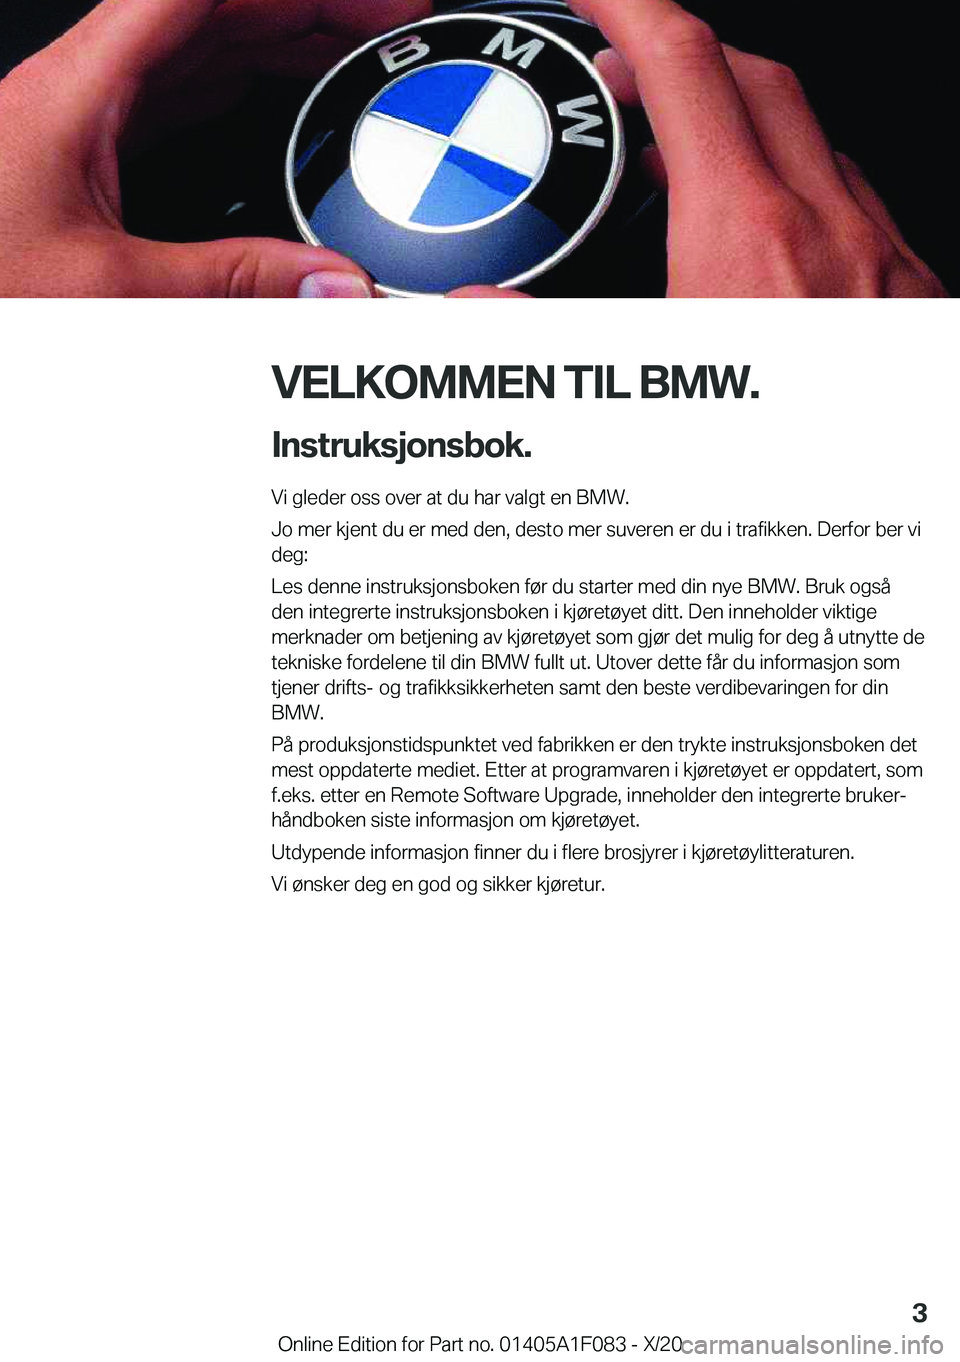 BMW X7 2021  InstruksjonsbØker (in Norwegian) �V�E�L�K�O�M�M�E�N��T�I�L��B�M�W�.�I�n�s�t�r�u�k�s�j�o�n�s�b�o�k�.
�V�i��g�l�e�d�e�r��o�s�s��o�v�e�r��a�t��d�u��h�a�r��v�a�l�g�t��e�n��B�M�W�.
�J�o��m�e�r��k�j�e�n�t��d�u��e�r��m�e�d�